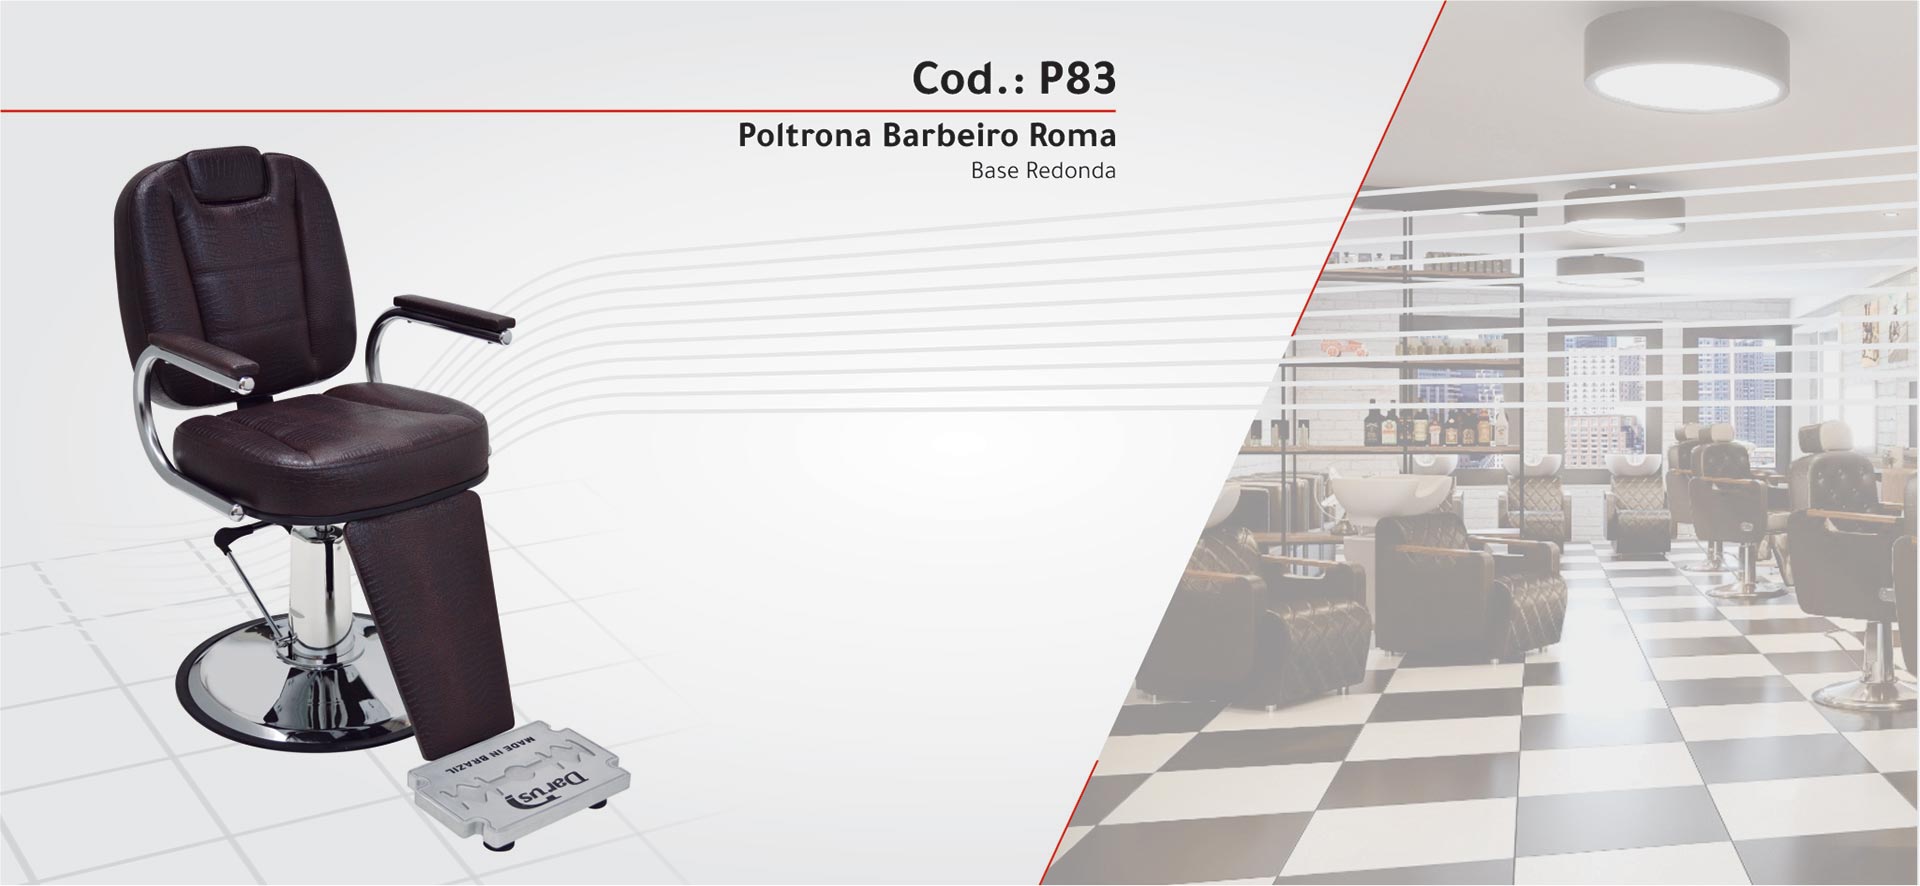 P83 - Poltrona Barbeiro Roma